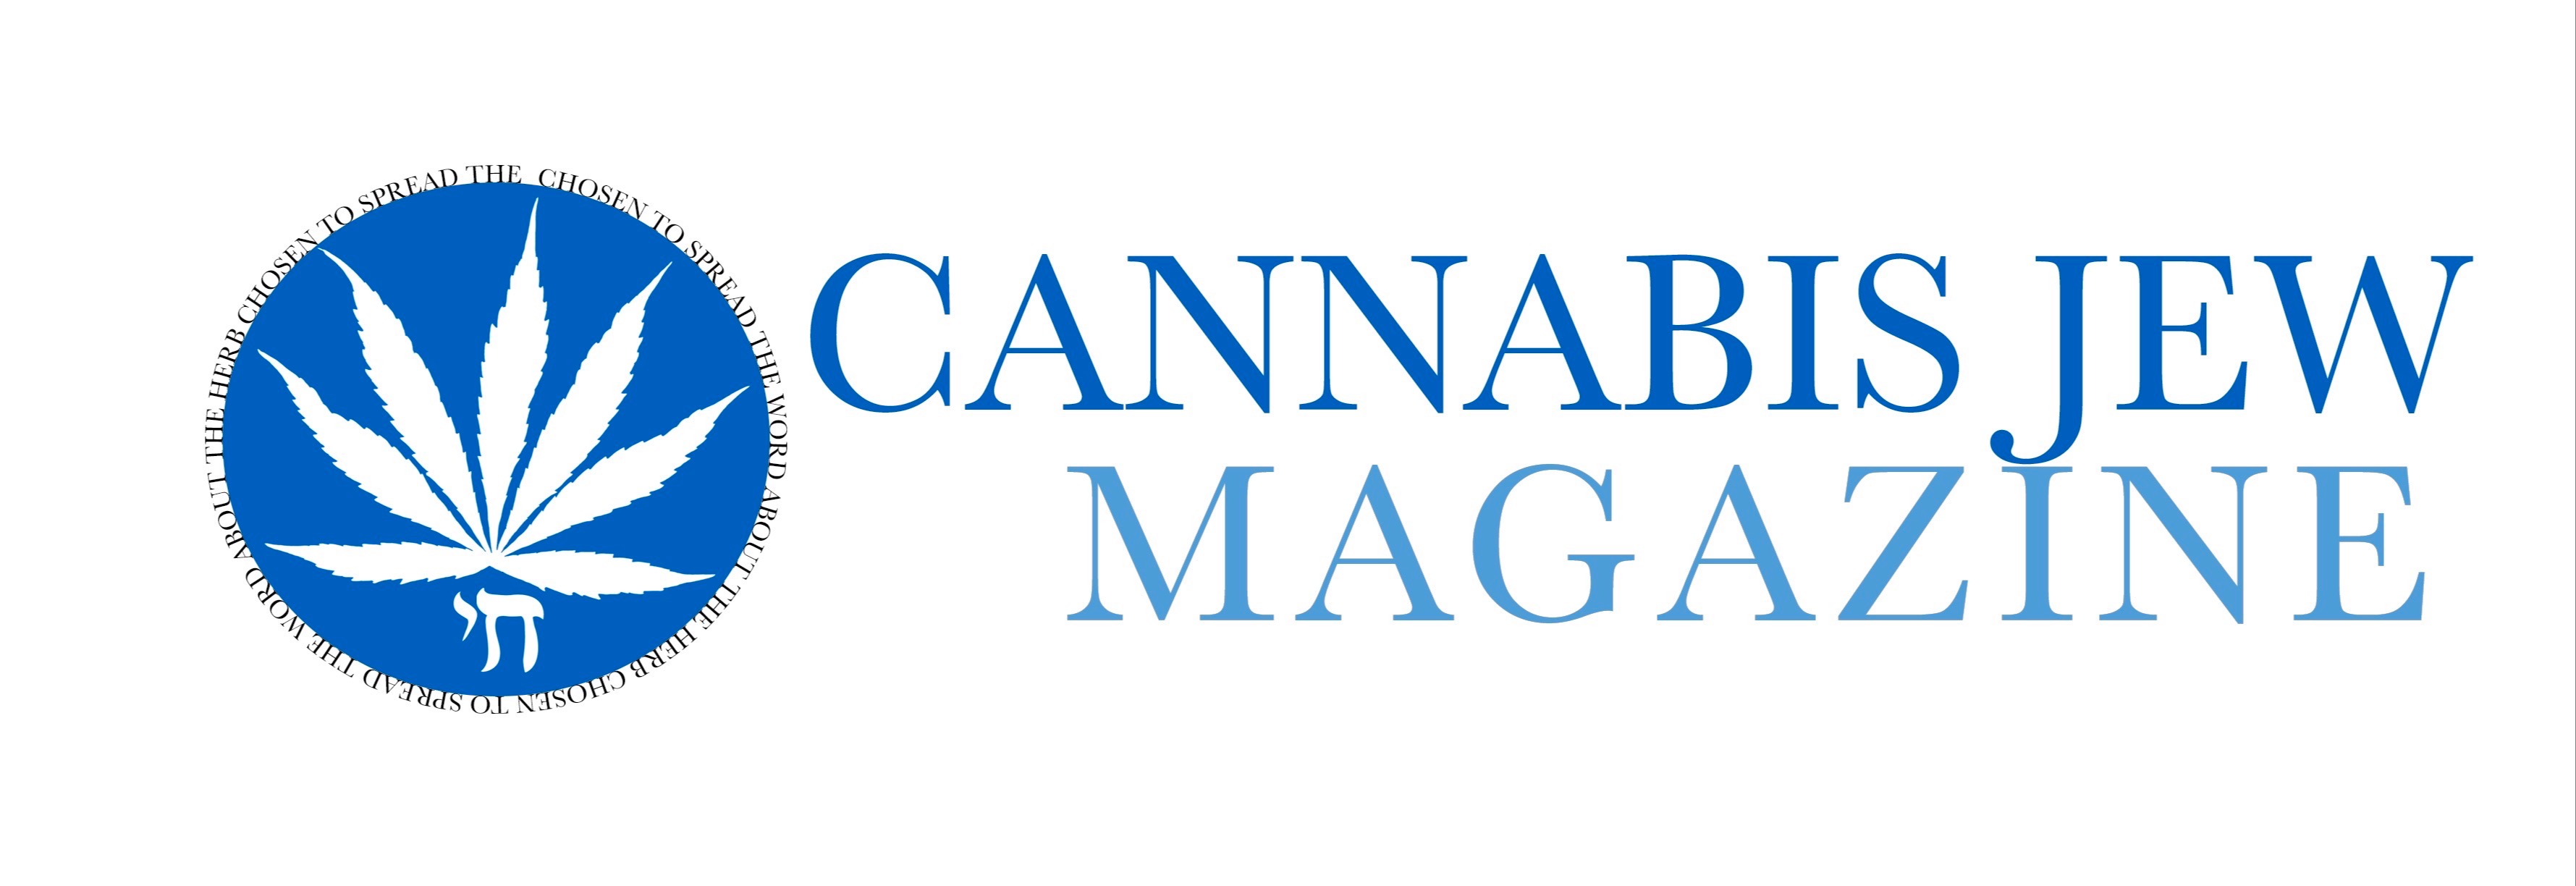 Cannabis Jew Magazine logo